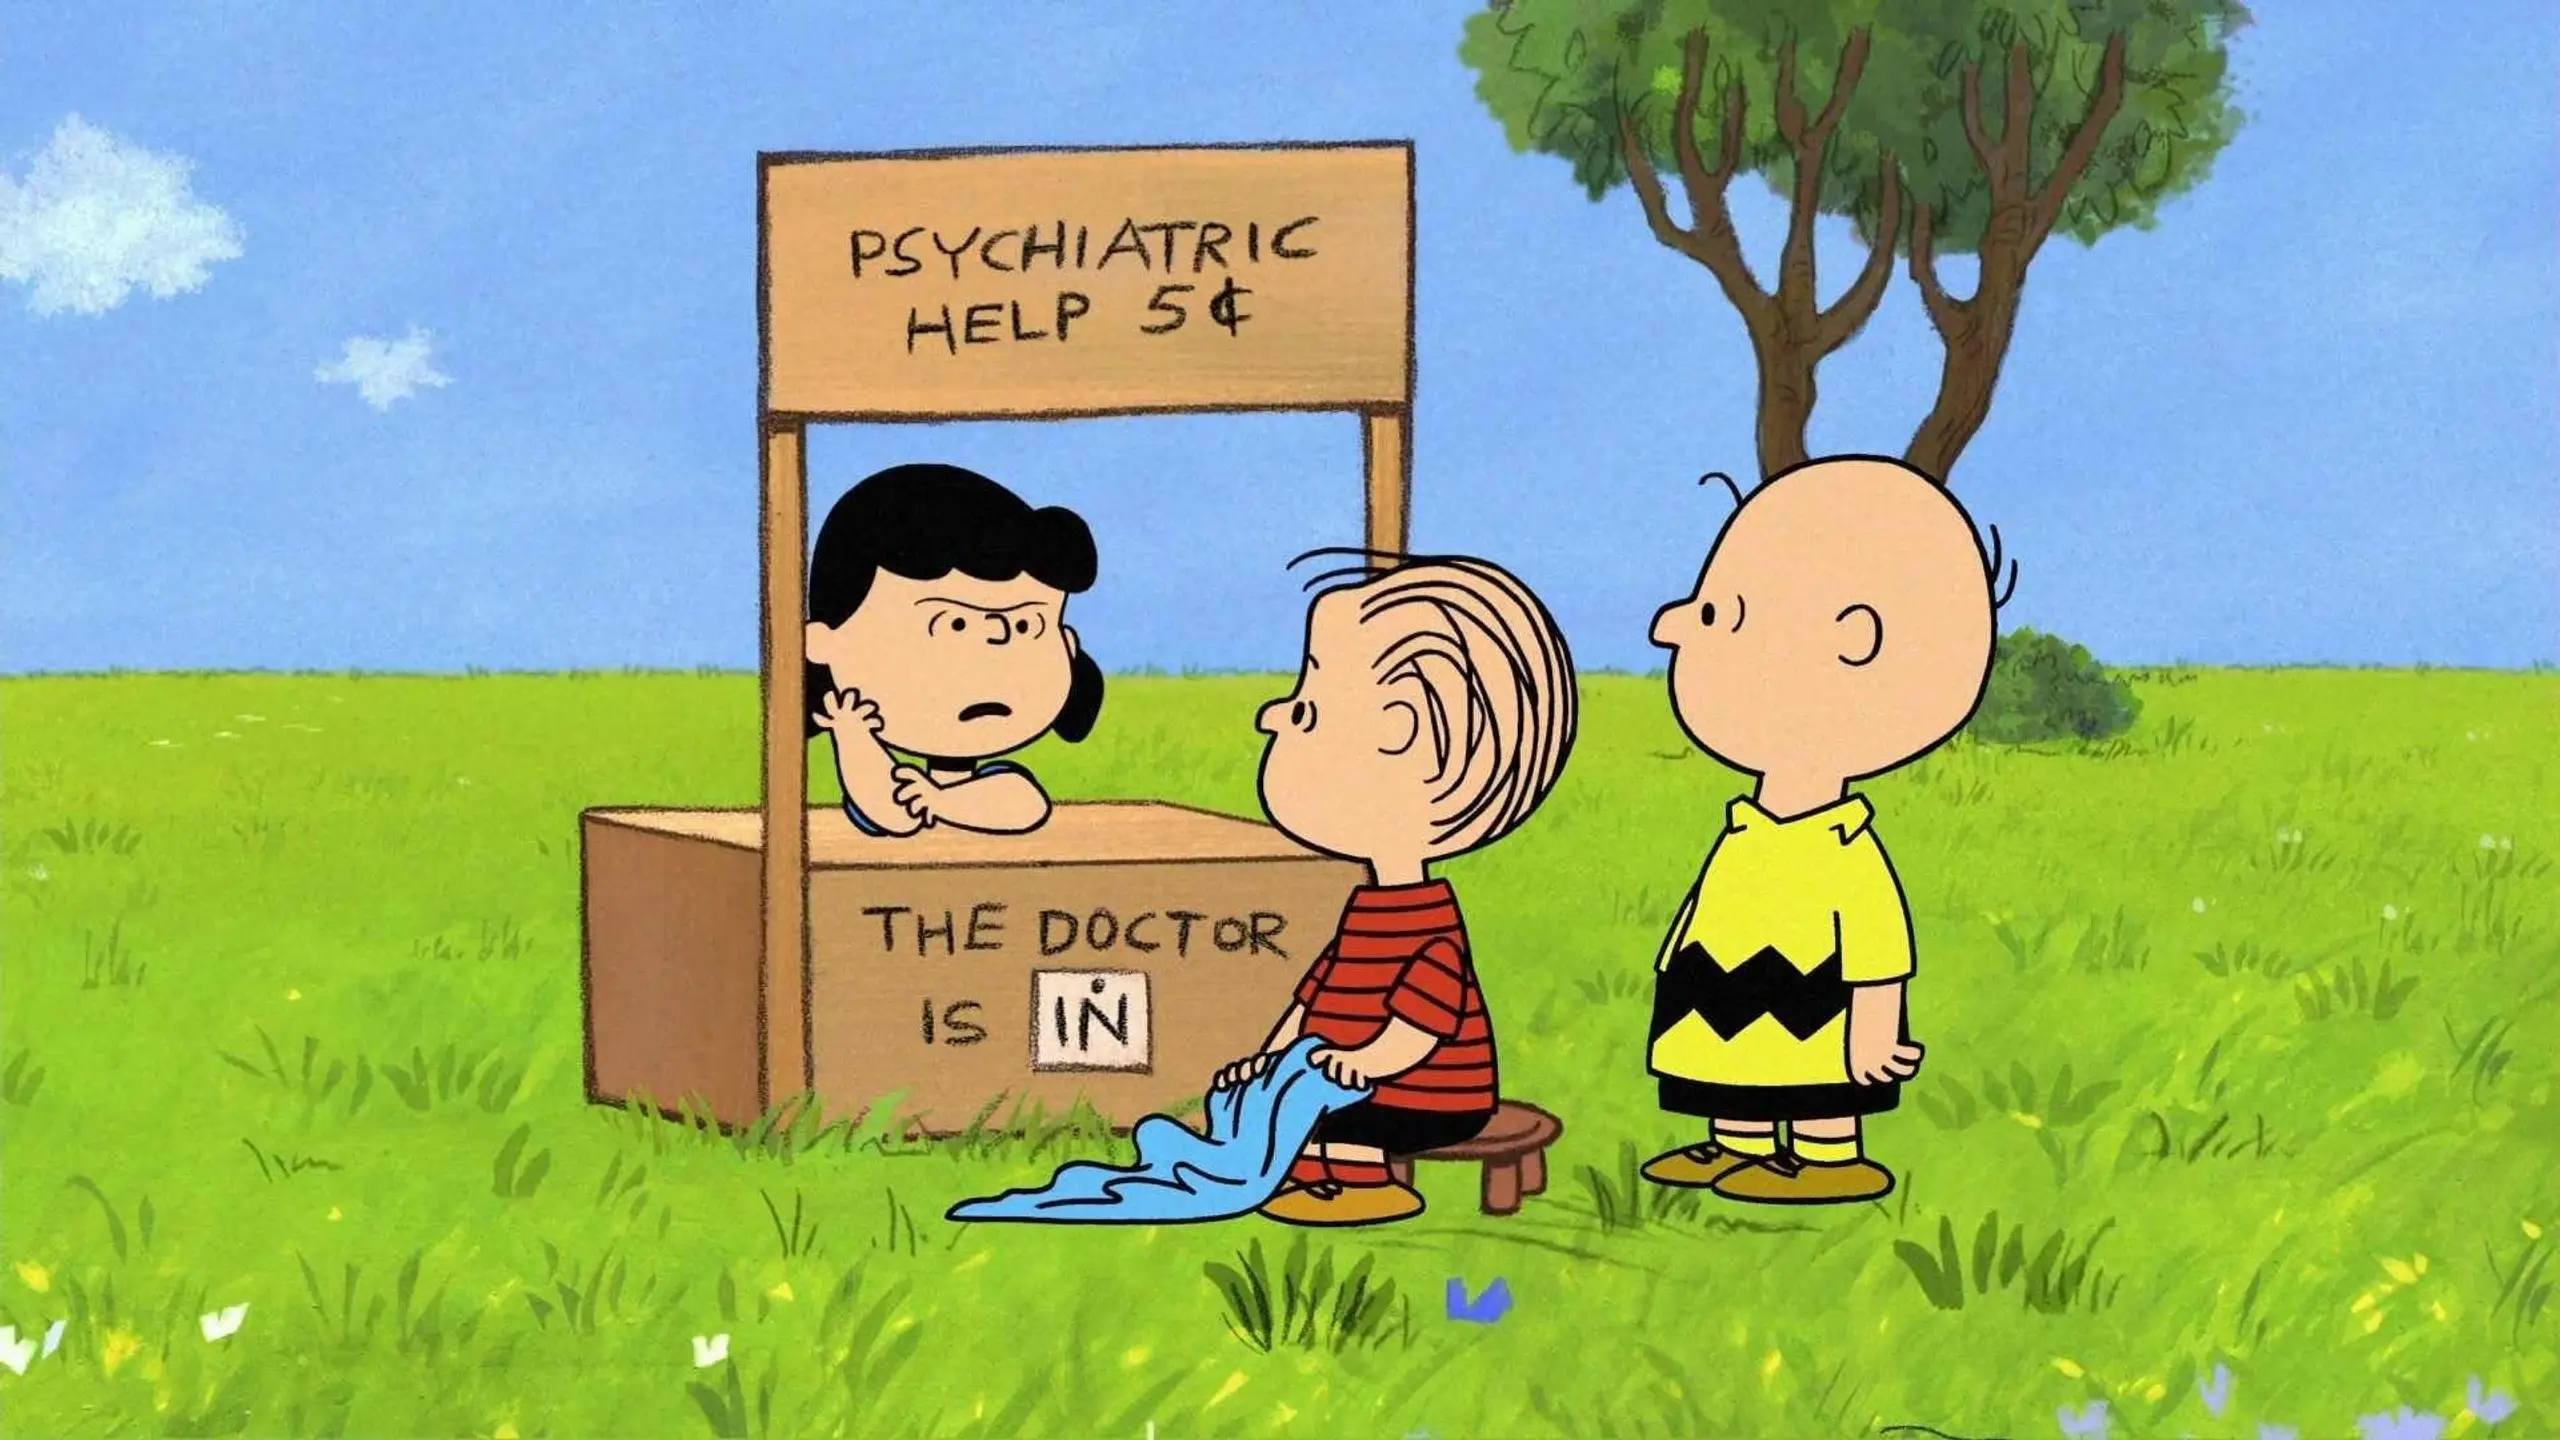 Glück ist eine wärmende Decke, Charlie Brown